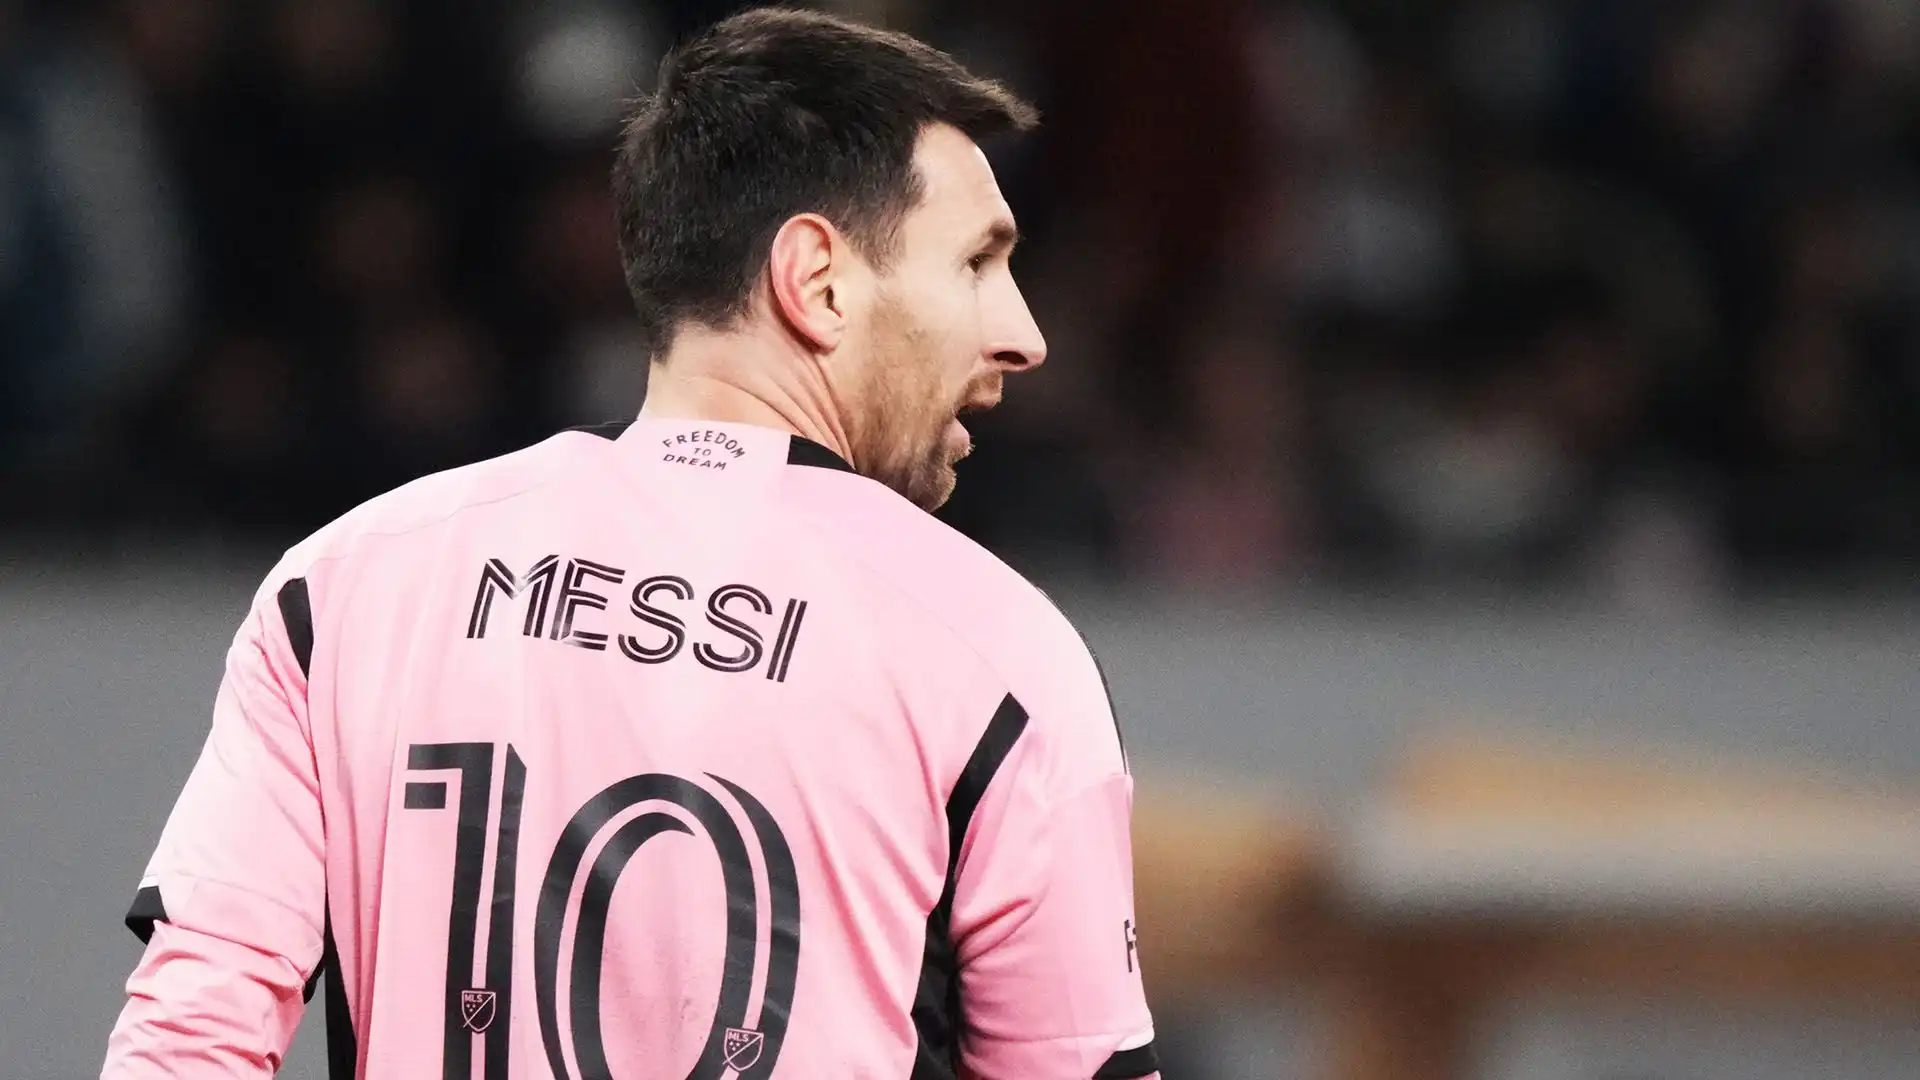 Si parla ironicamente di un "miracolo medico" per il ritorno in campo di Messi